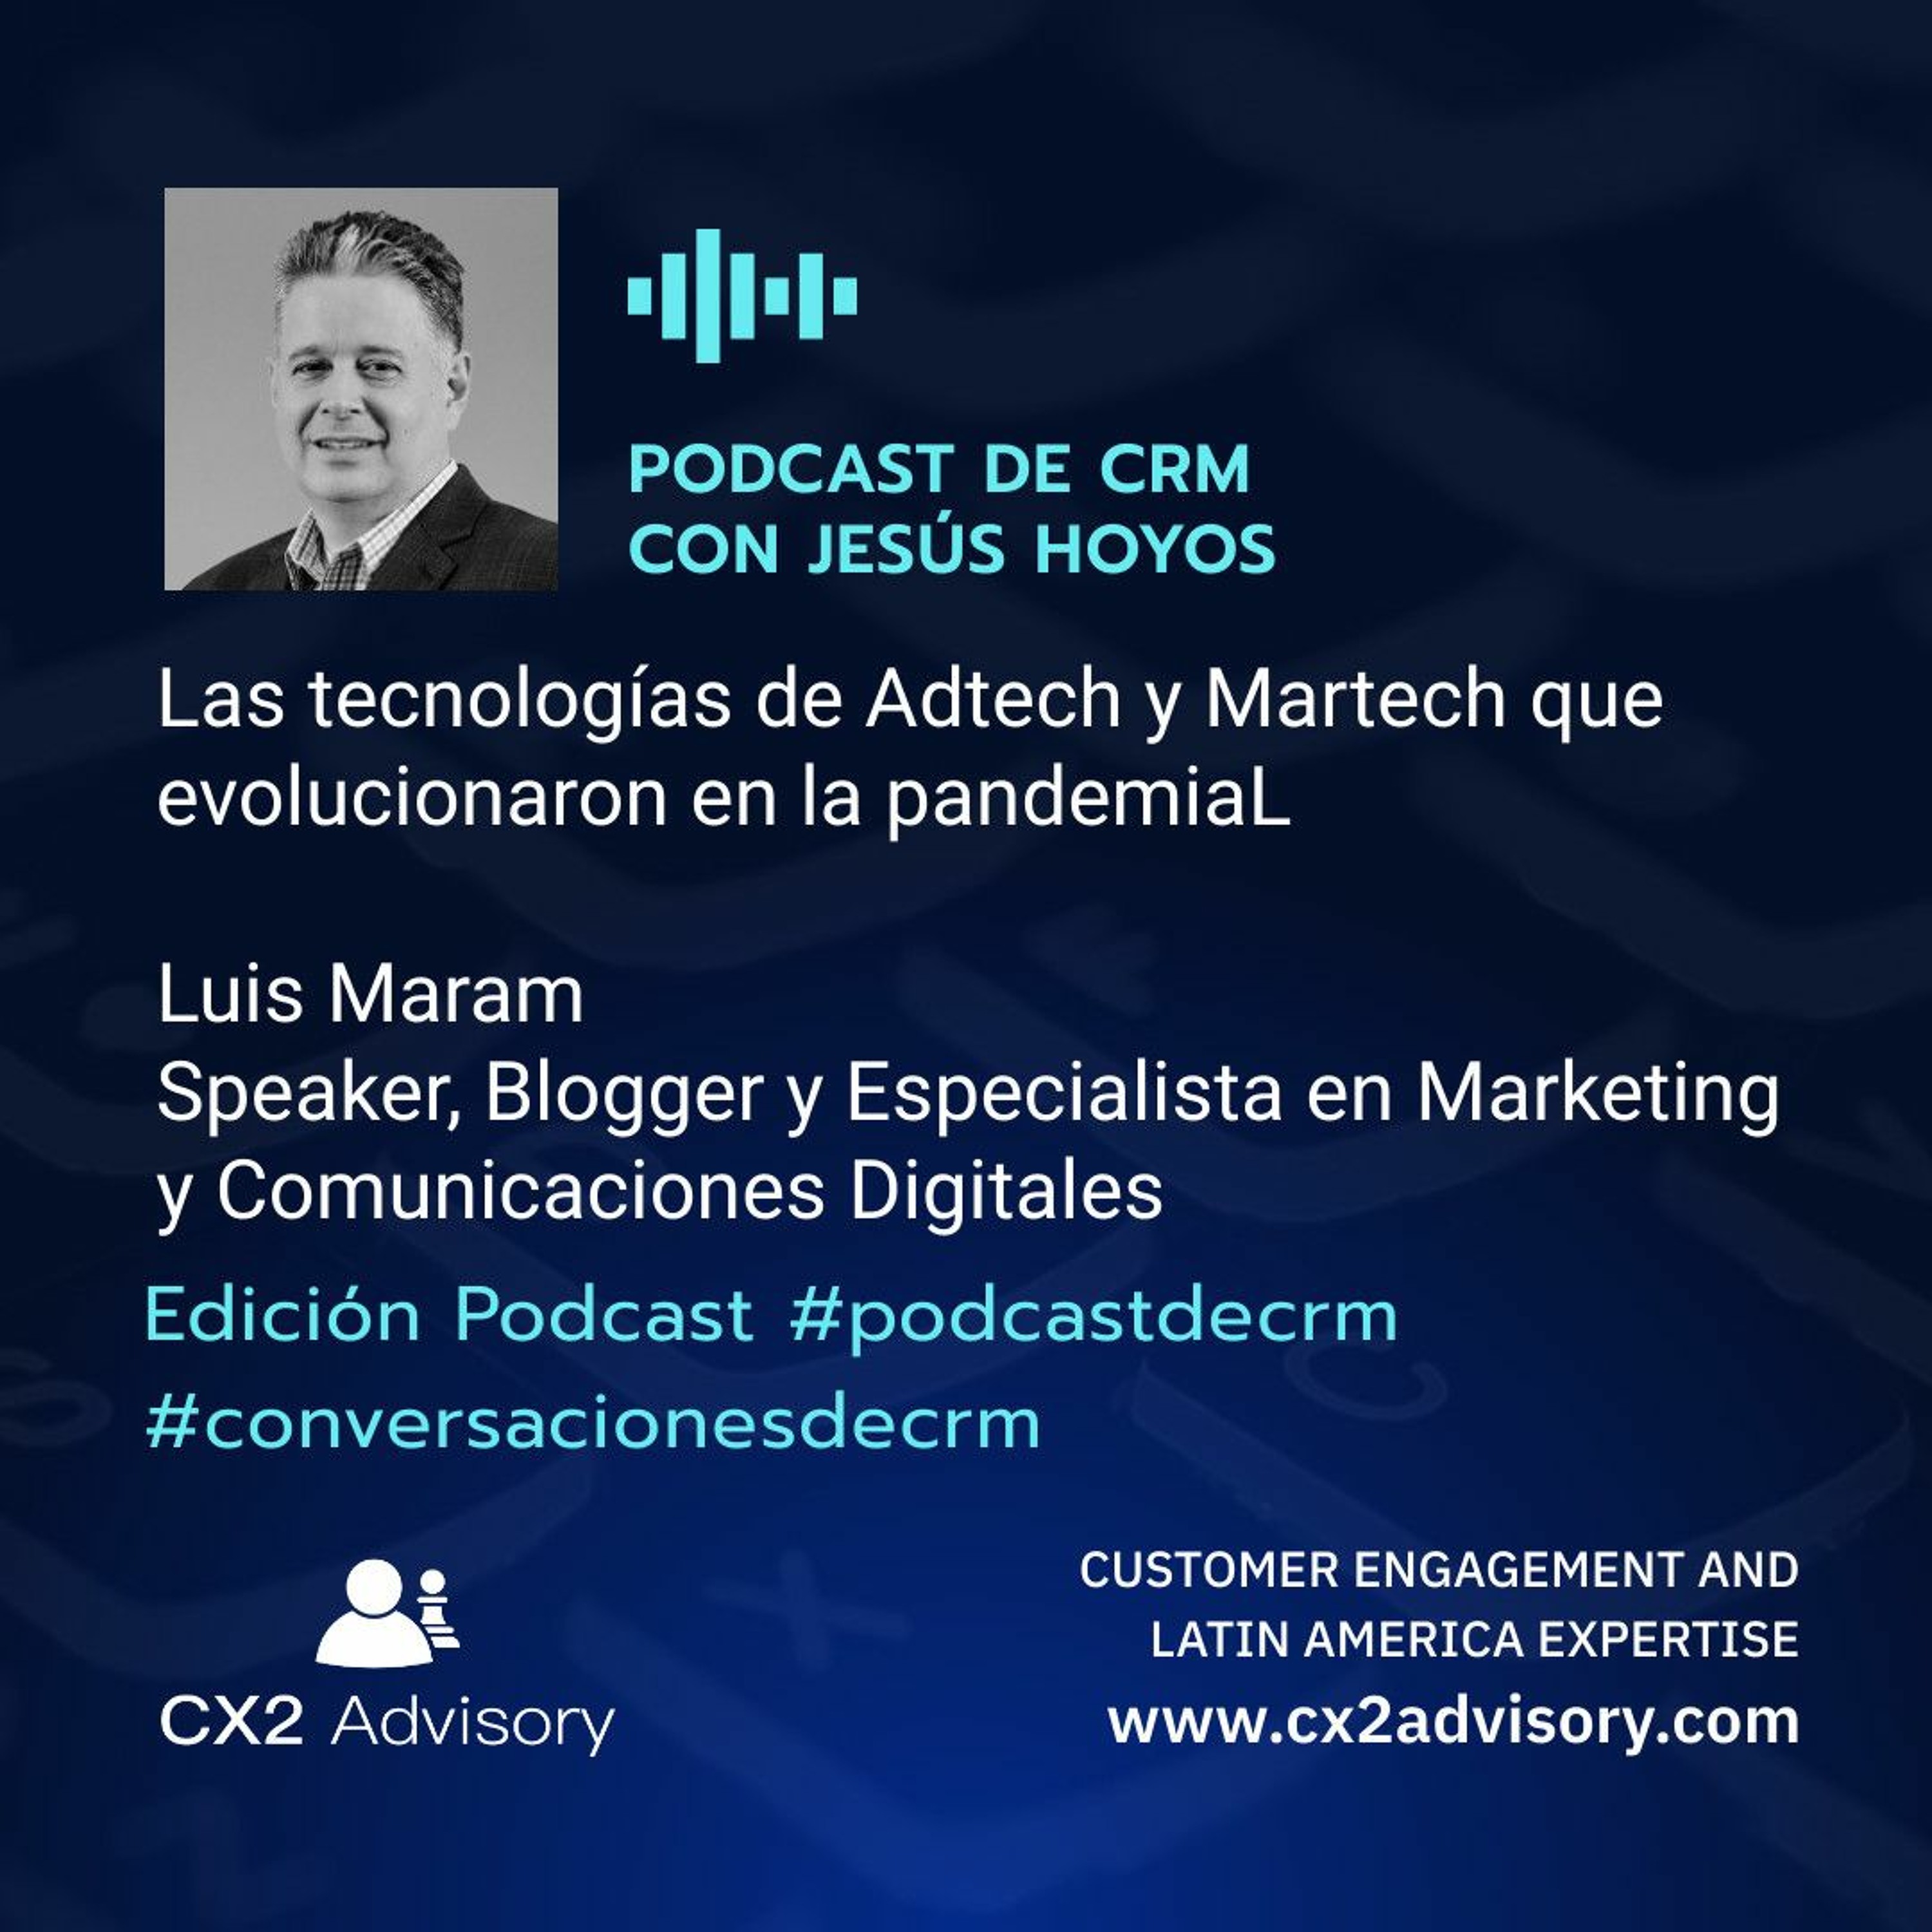 Edición Podcast - Conversaciones de CRM: Tecnologías de Adtech y Martech en la pandemia